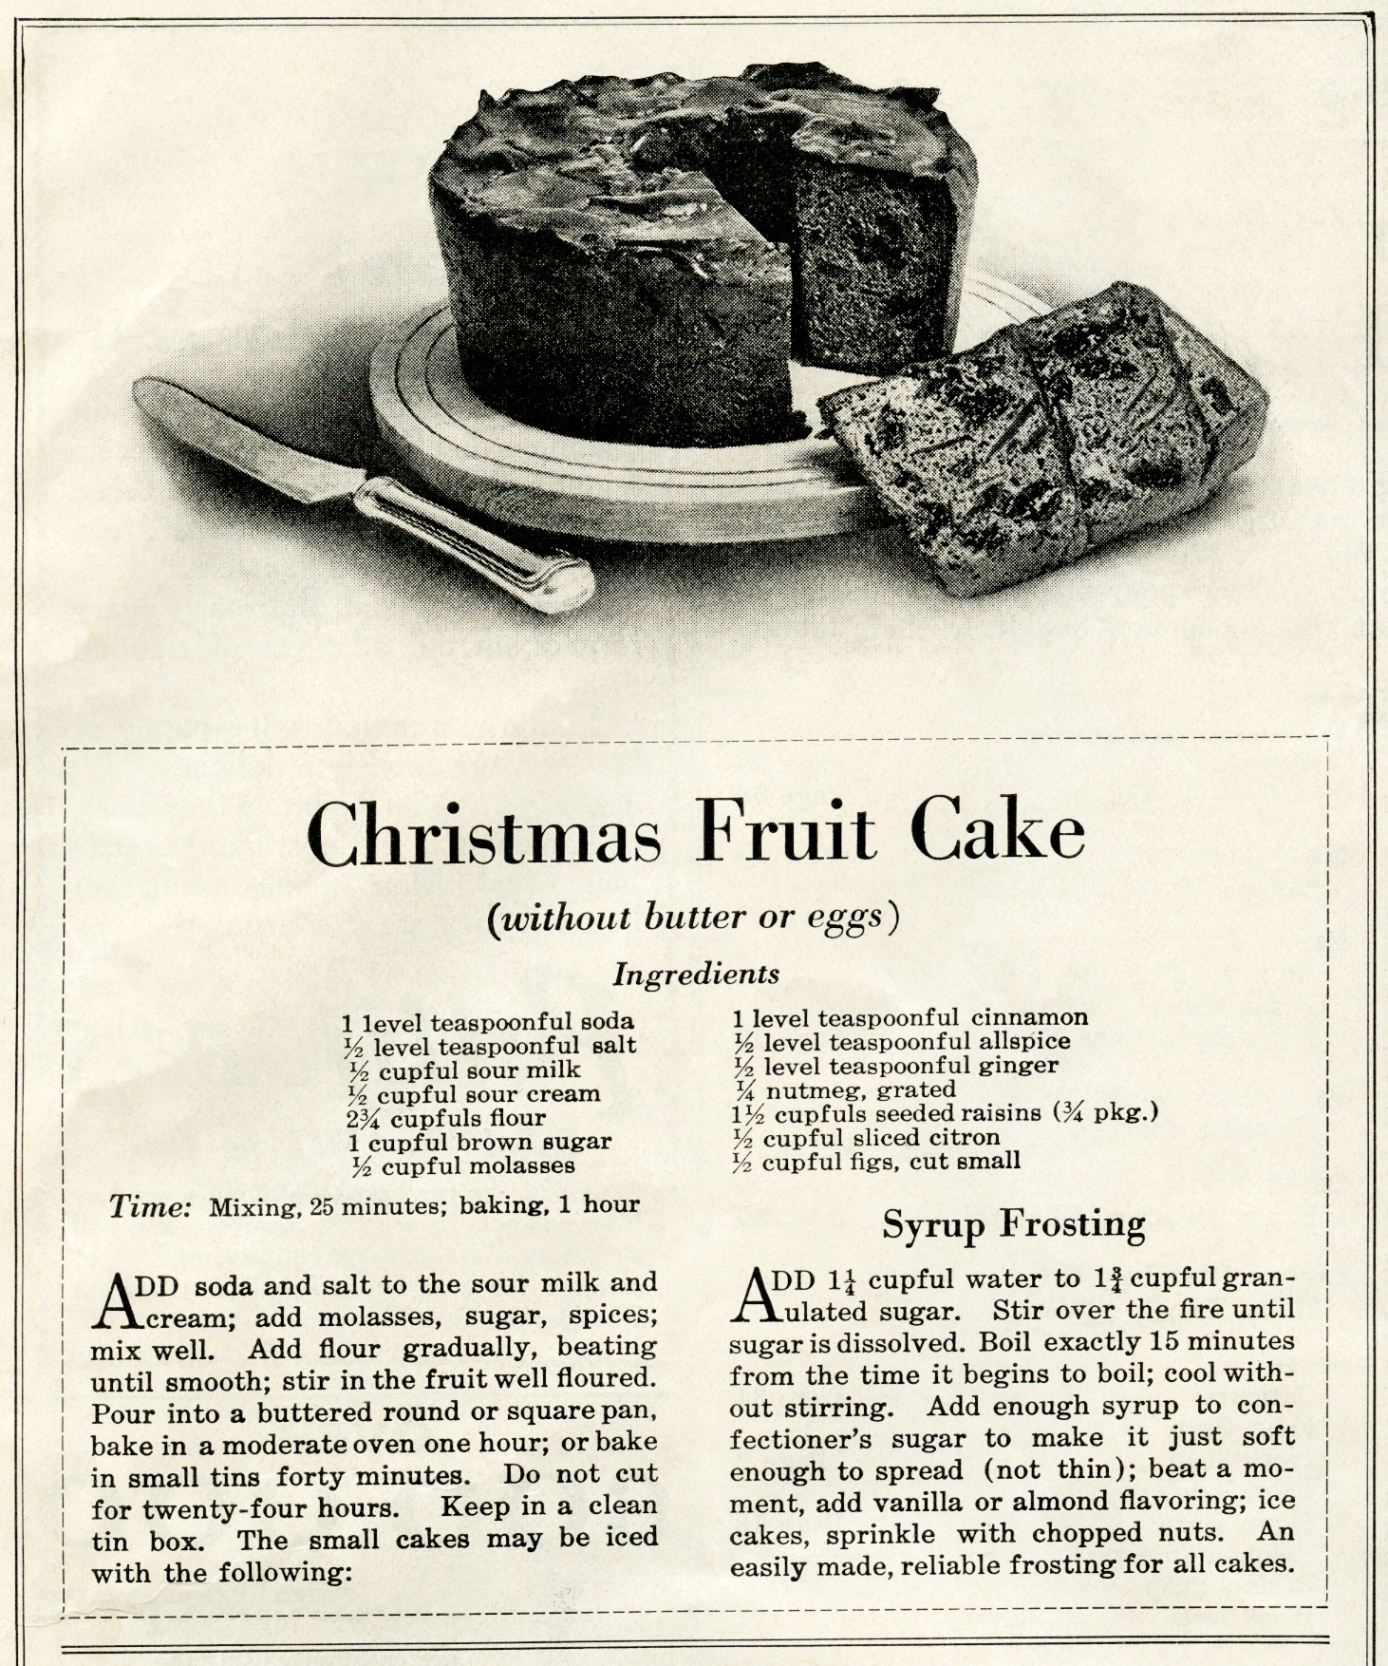 Vintage Christmas Fruit Cake Recipe - The Old Design Shop